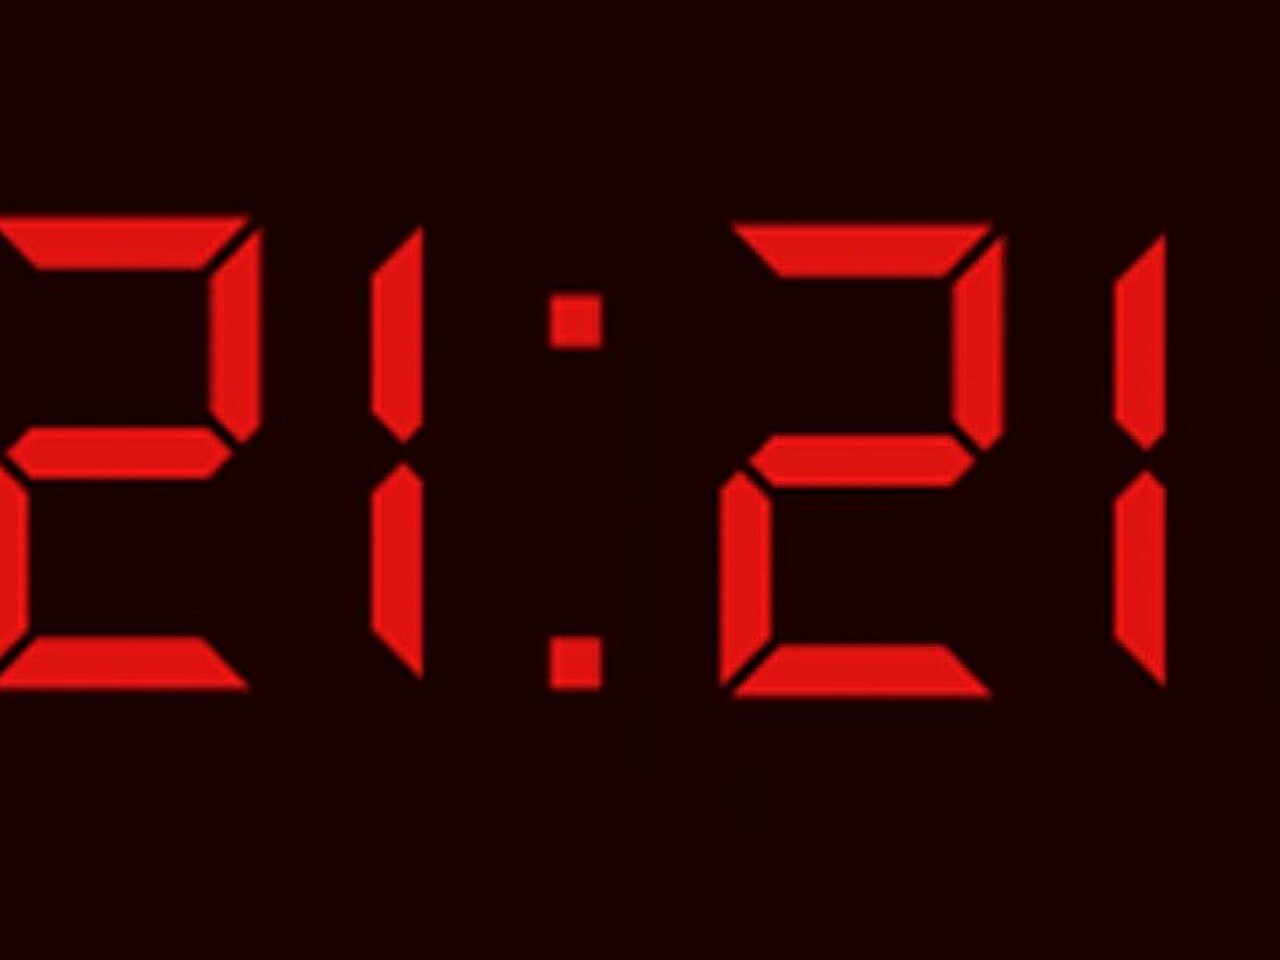 2121 время на часах значение. Цифры на электронных часах. 11 11 Электронные часы. Первые цифровые часы. Часы повторяющиеся цифры на часах.